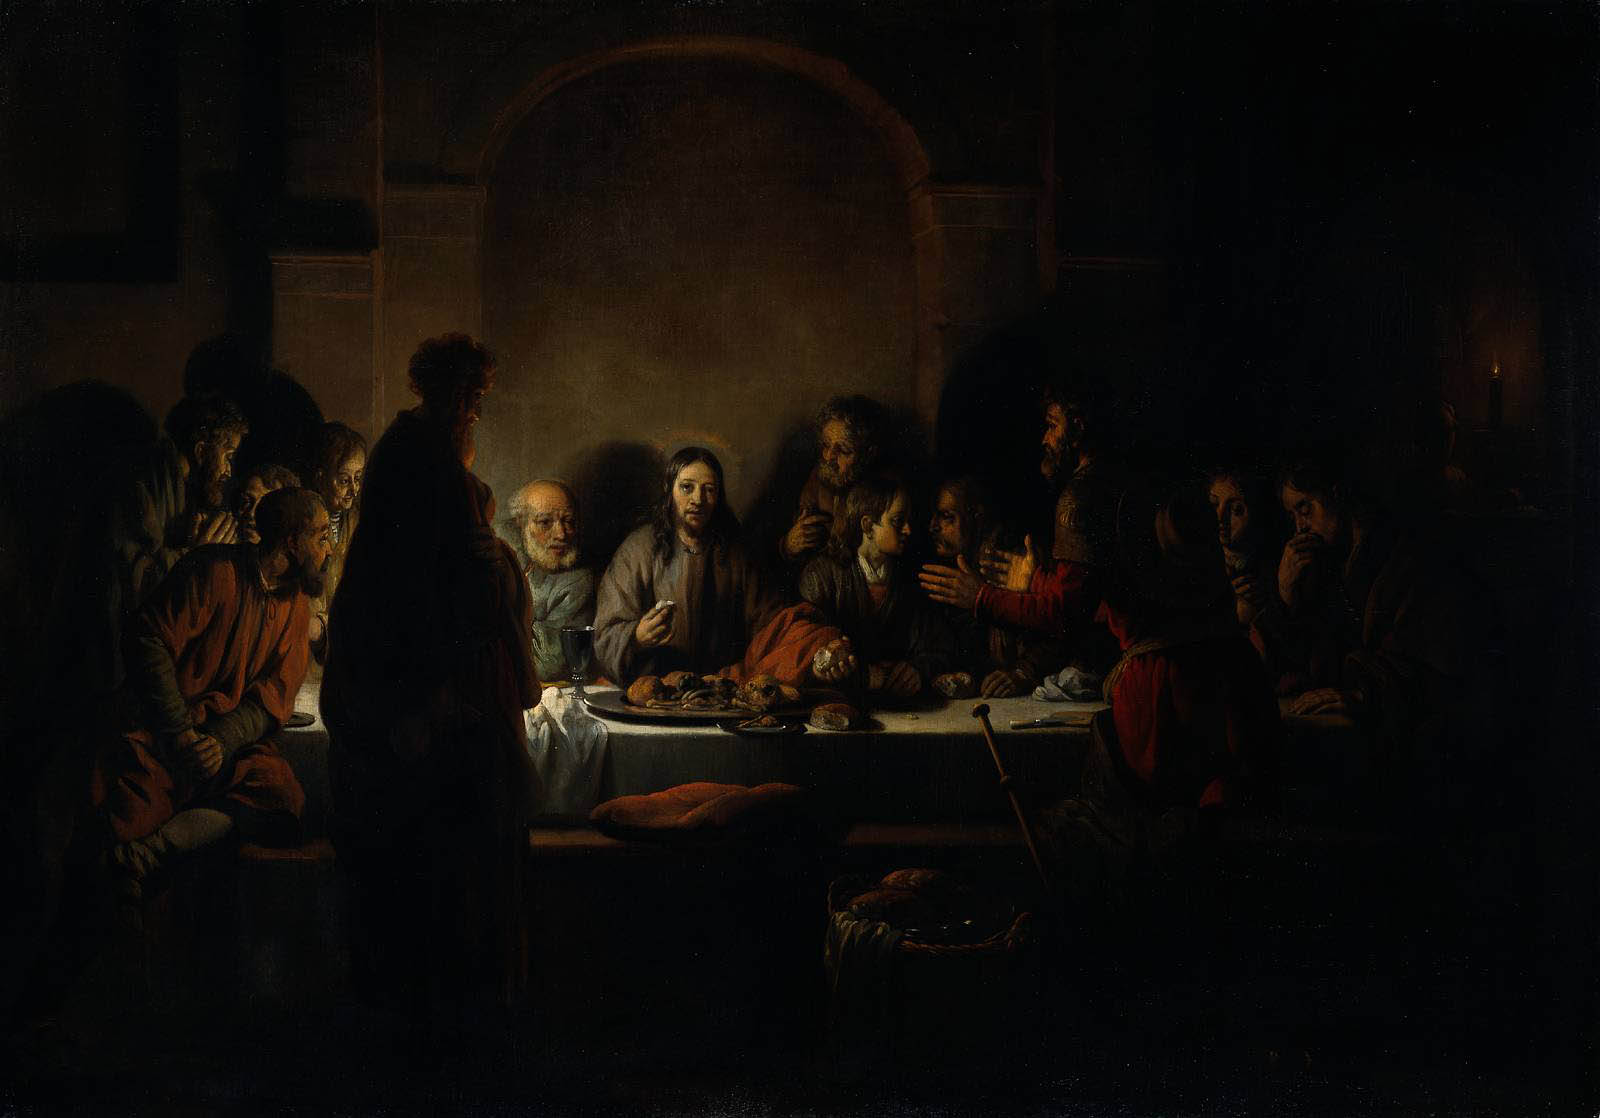 Gerbrand van den Eeckhout - The Last Supper - 1664 - Oil on Canvas - 100x142 cm - Rijksmuseum Amsterdam